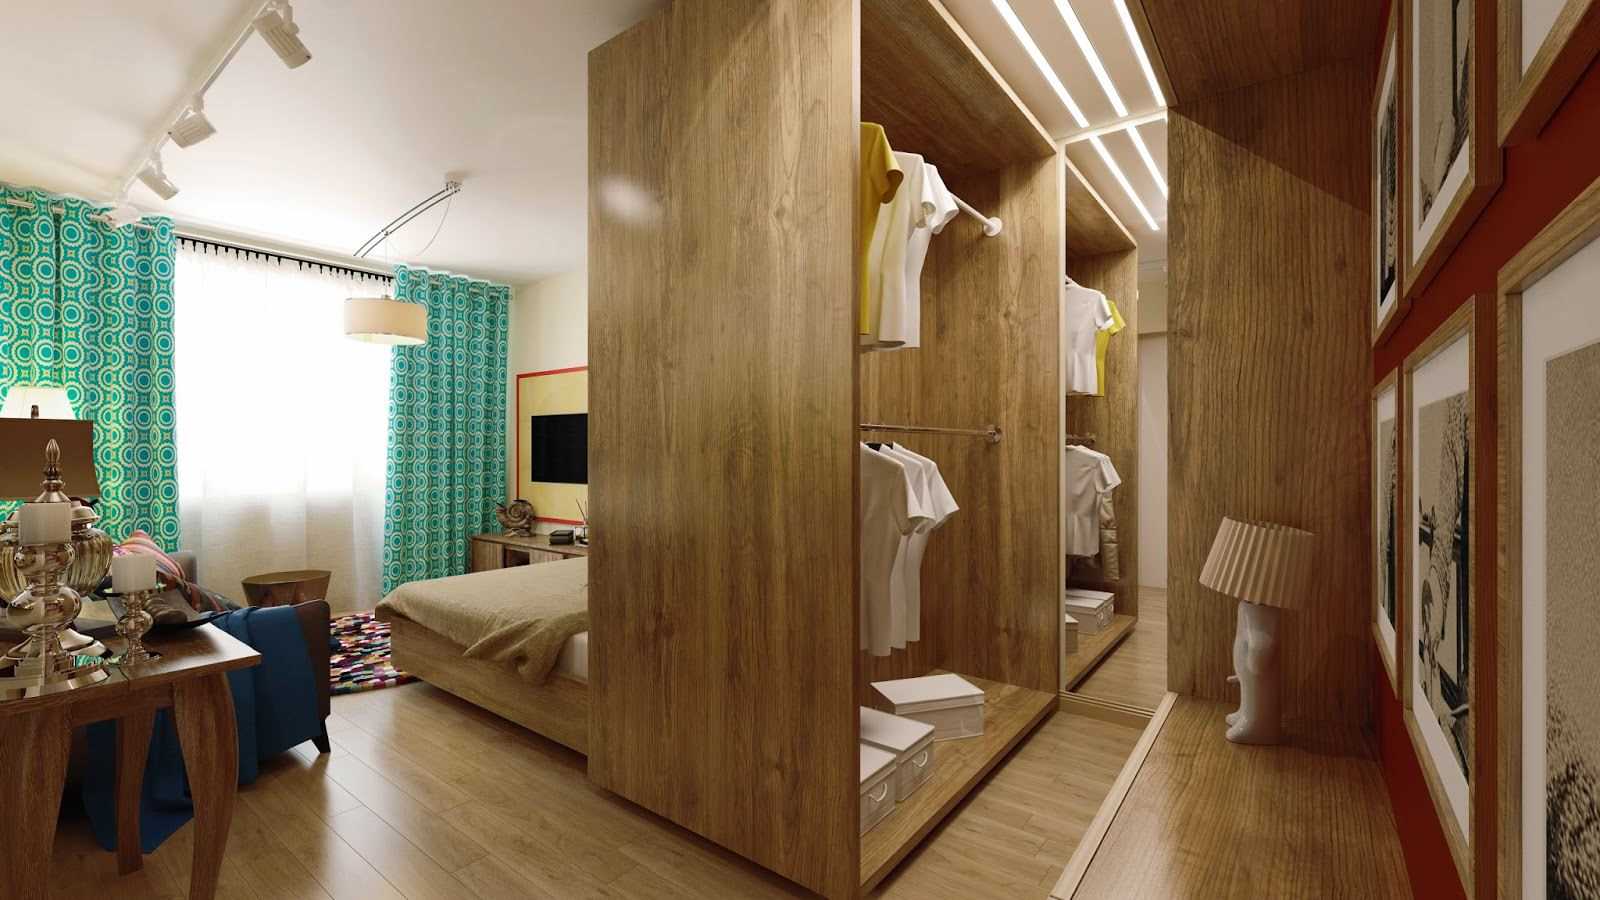 غرفة نوم وغرفة معيشة 18 متر مربع. مع غرفة خلع الملابس